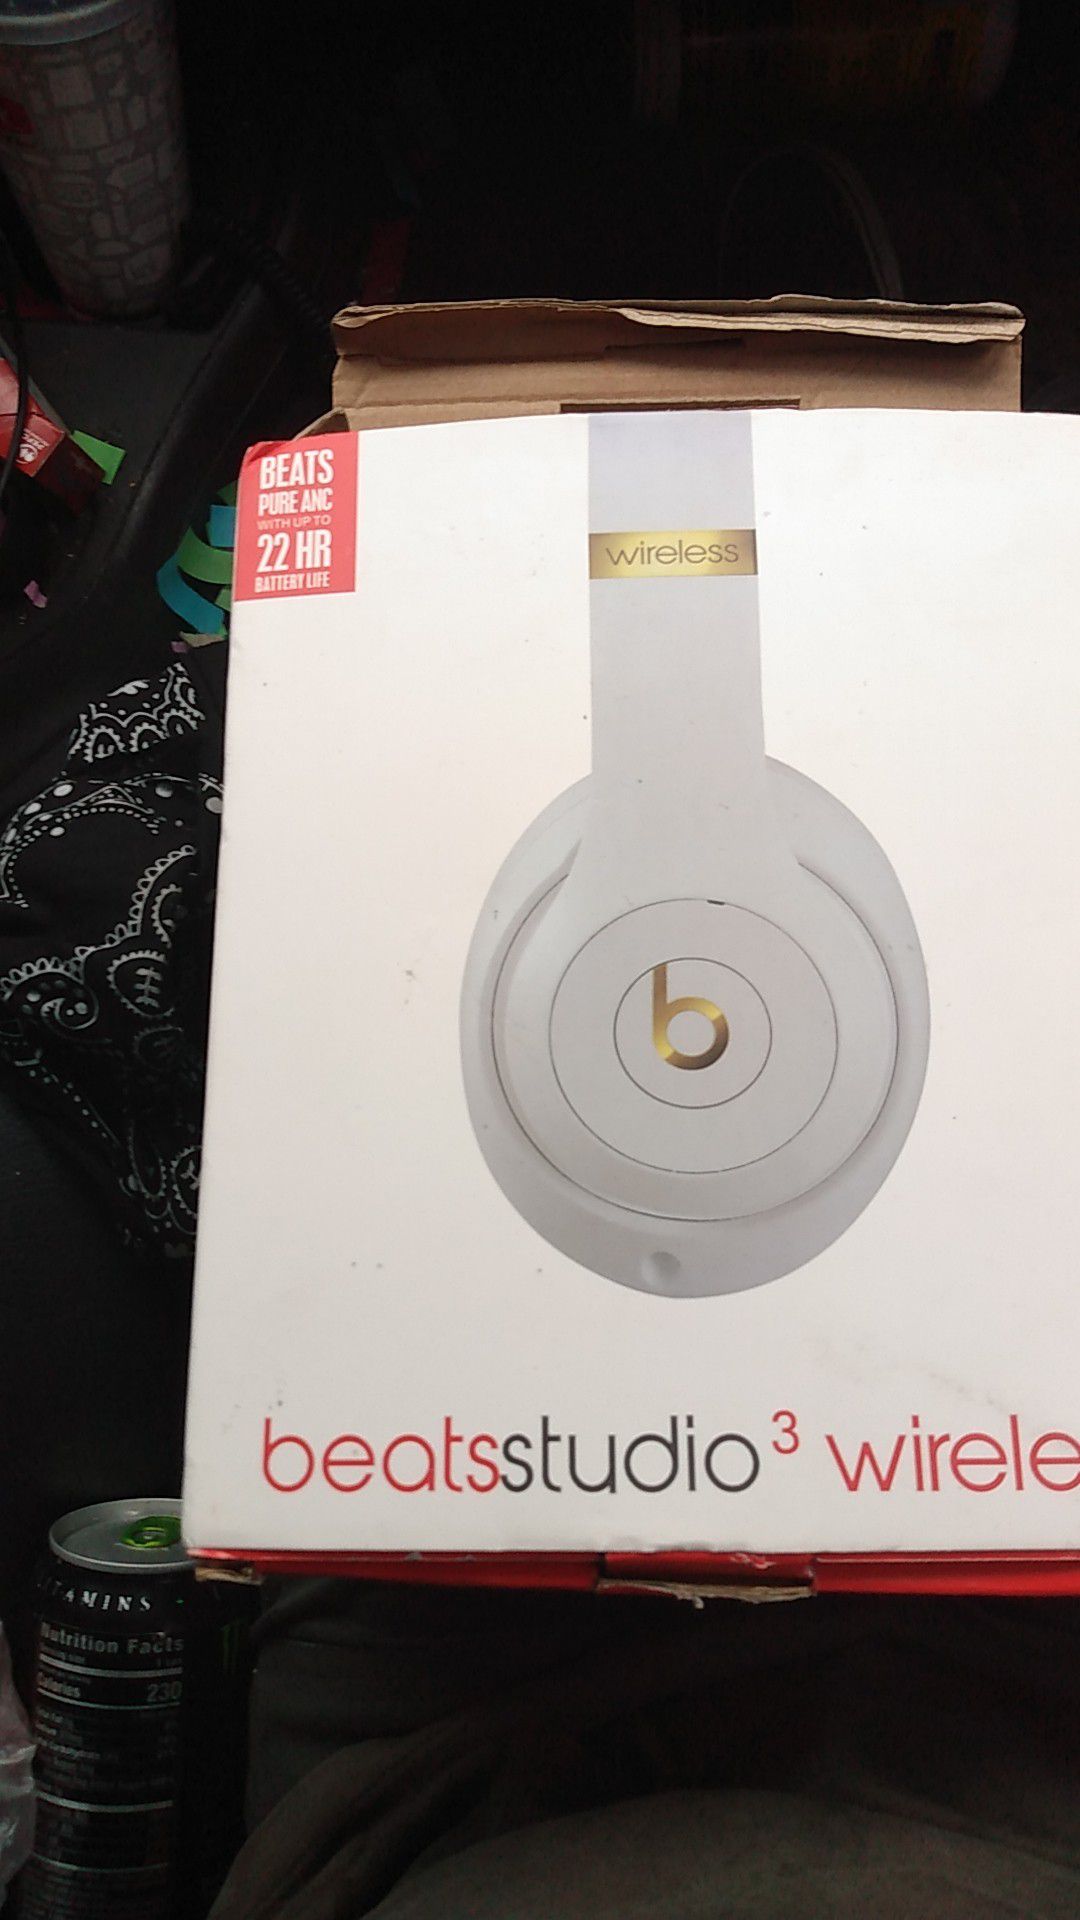 Beats studio 3. Wireless headphones